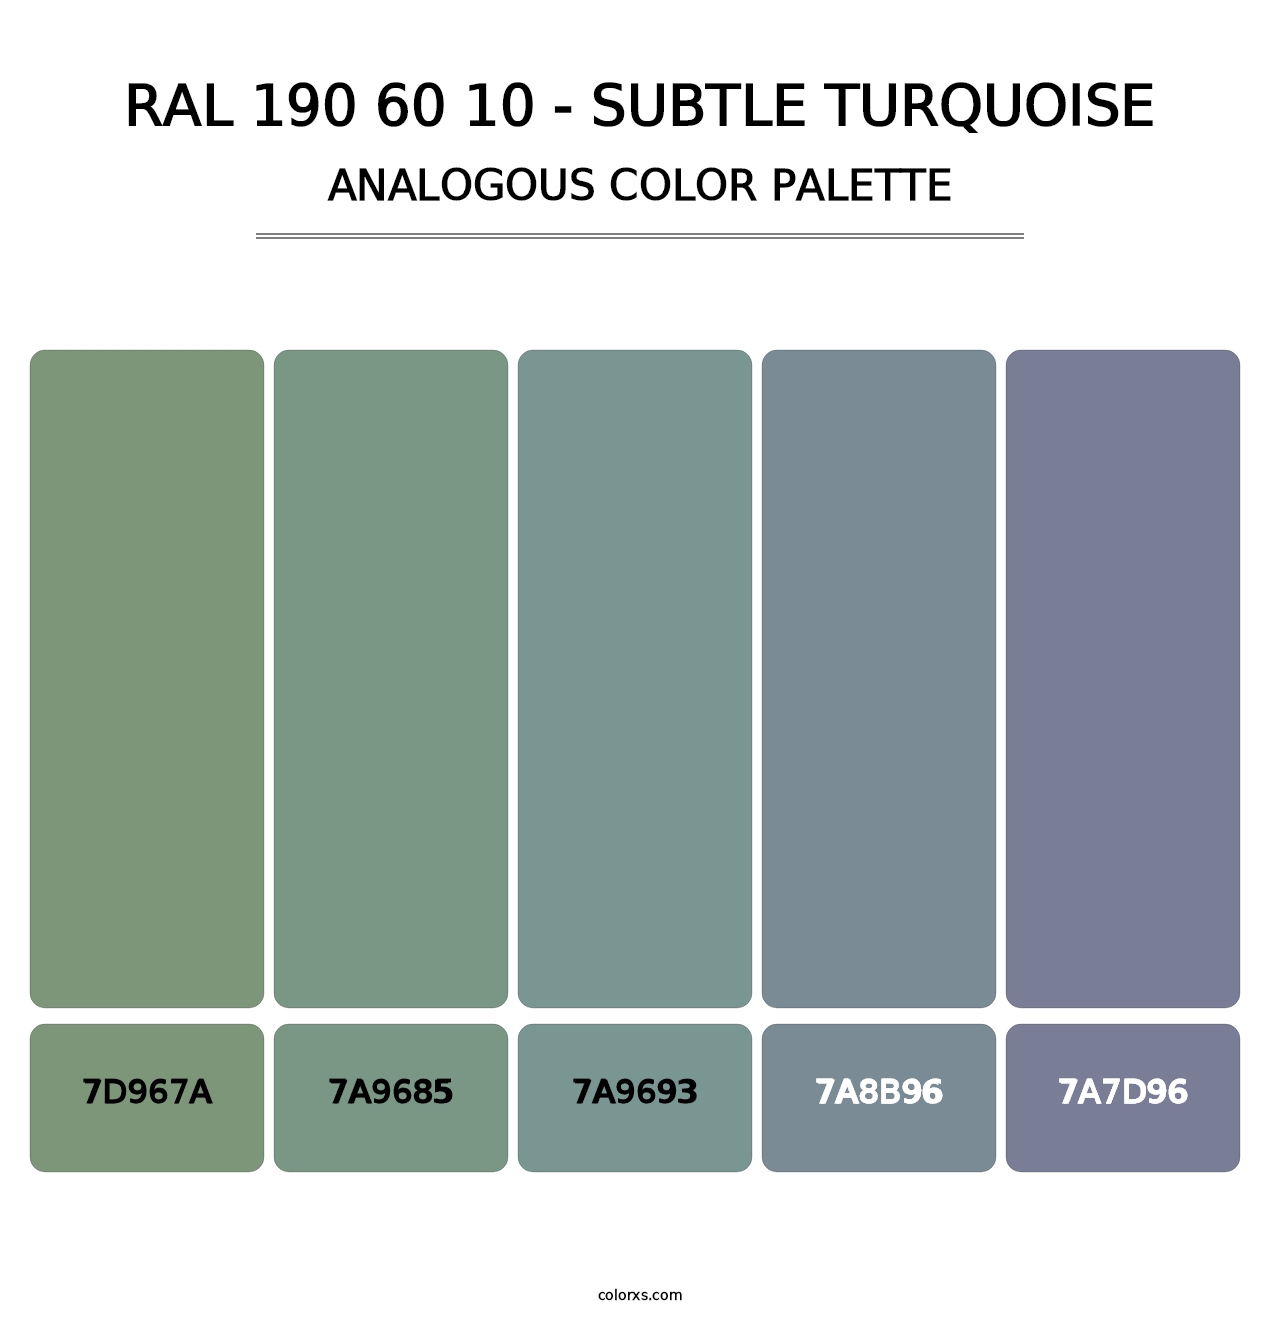 RAL 190 60 10 - Subtle Turquoise - Analogous Color Palette